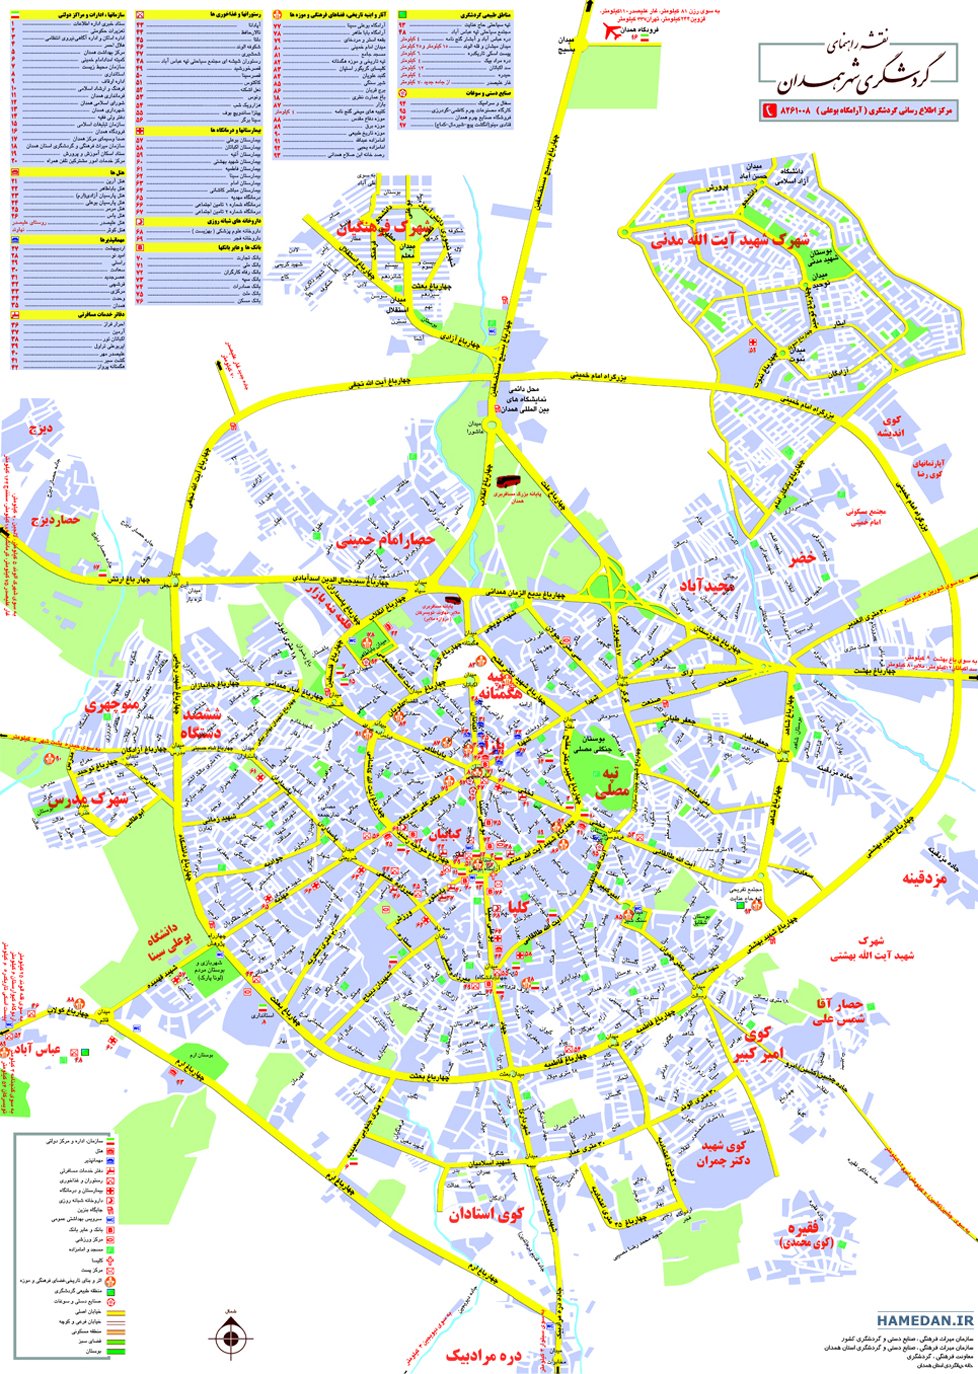 نقشه شهر همدان